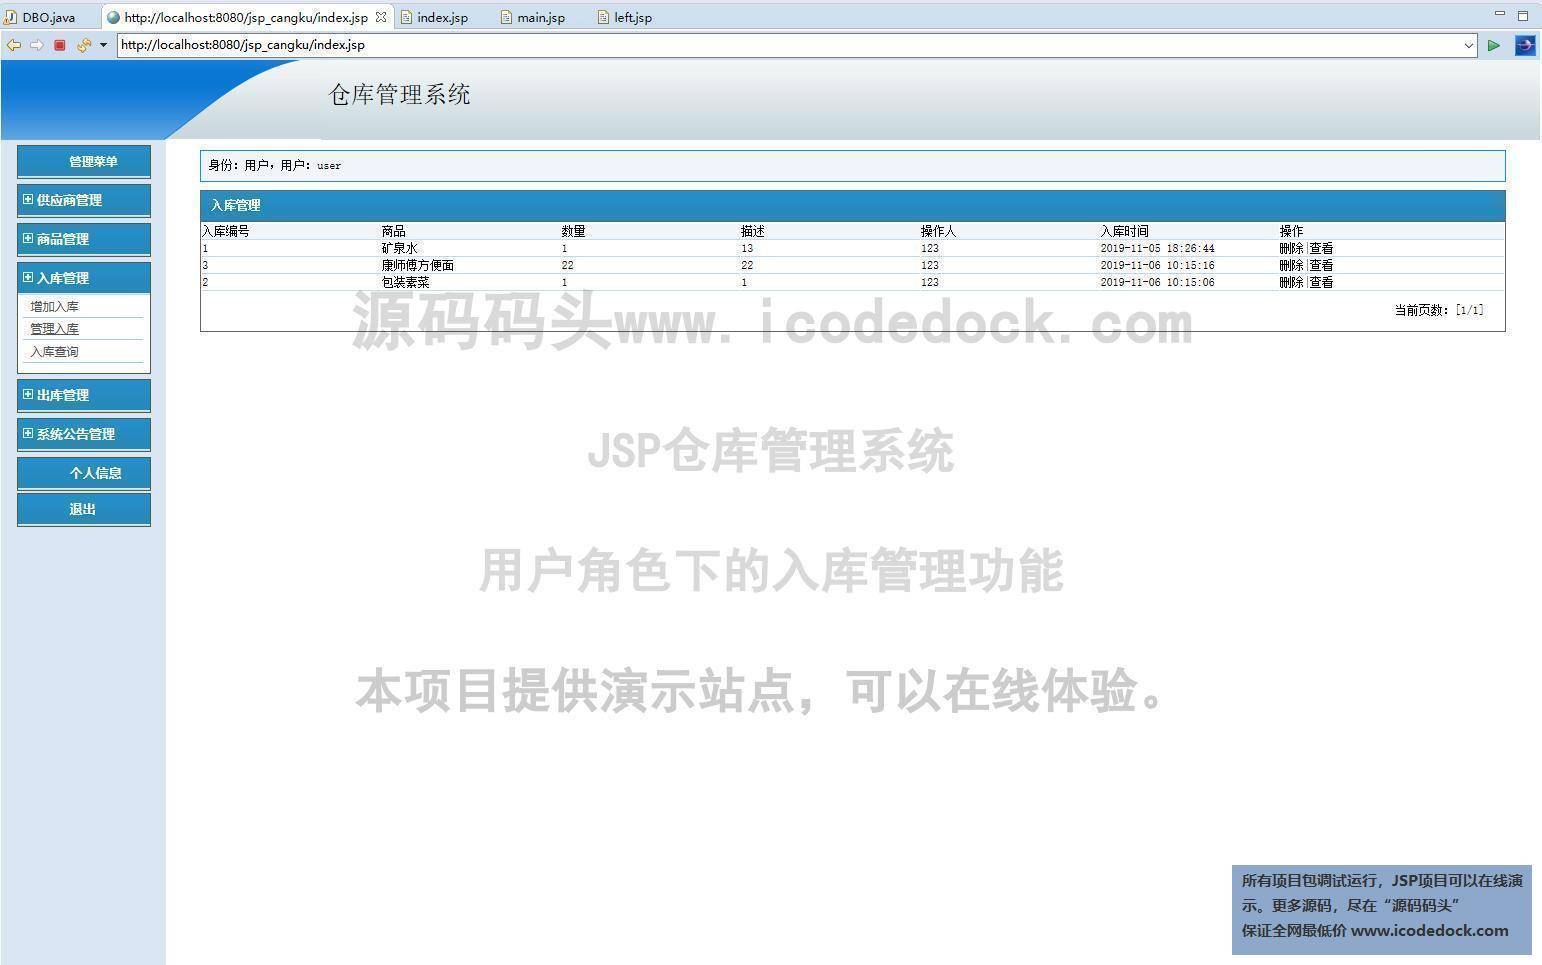 源码码头-JSP仓库管理系统-用户角色-入库管理